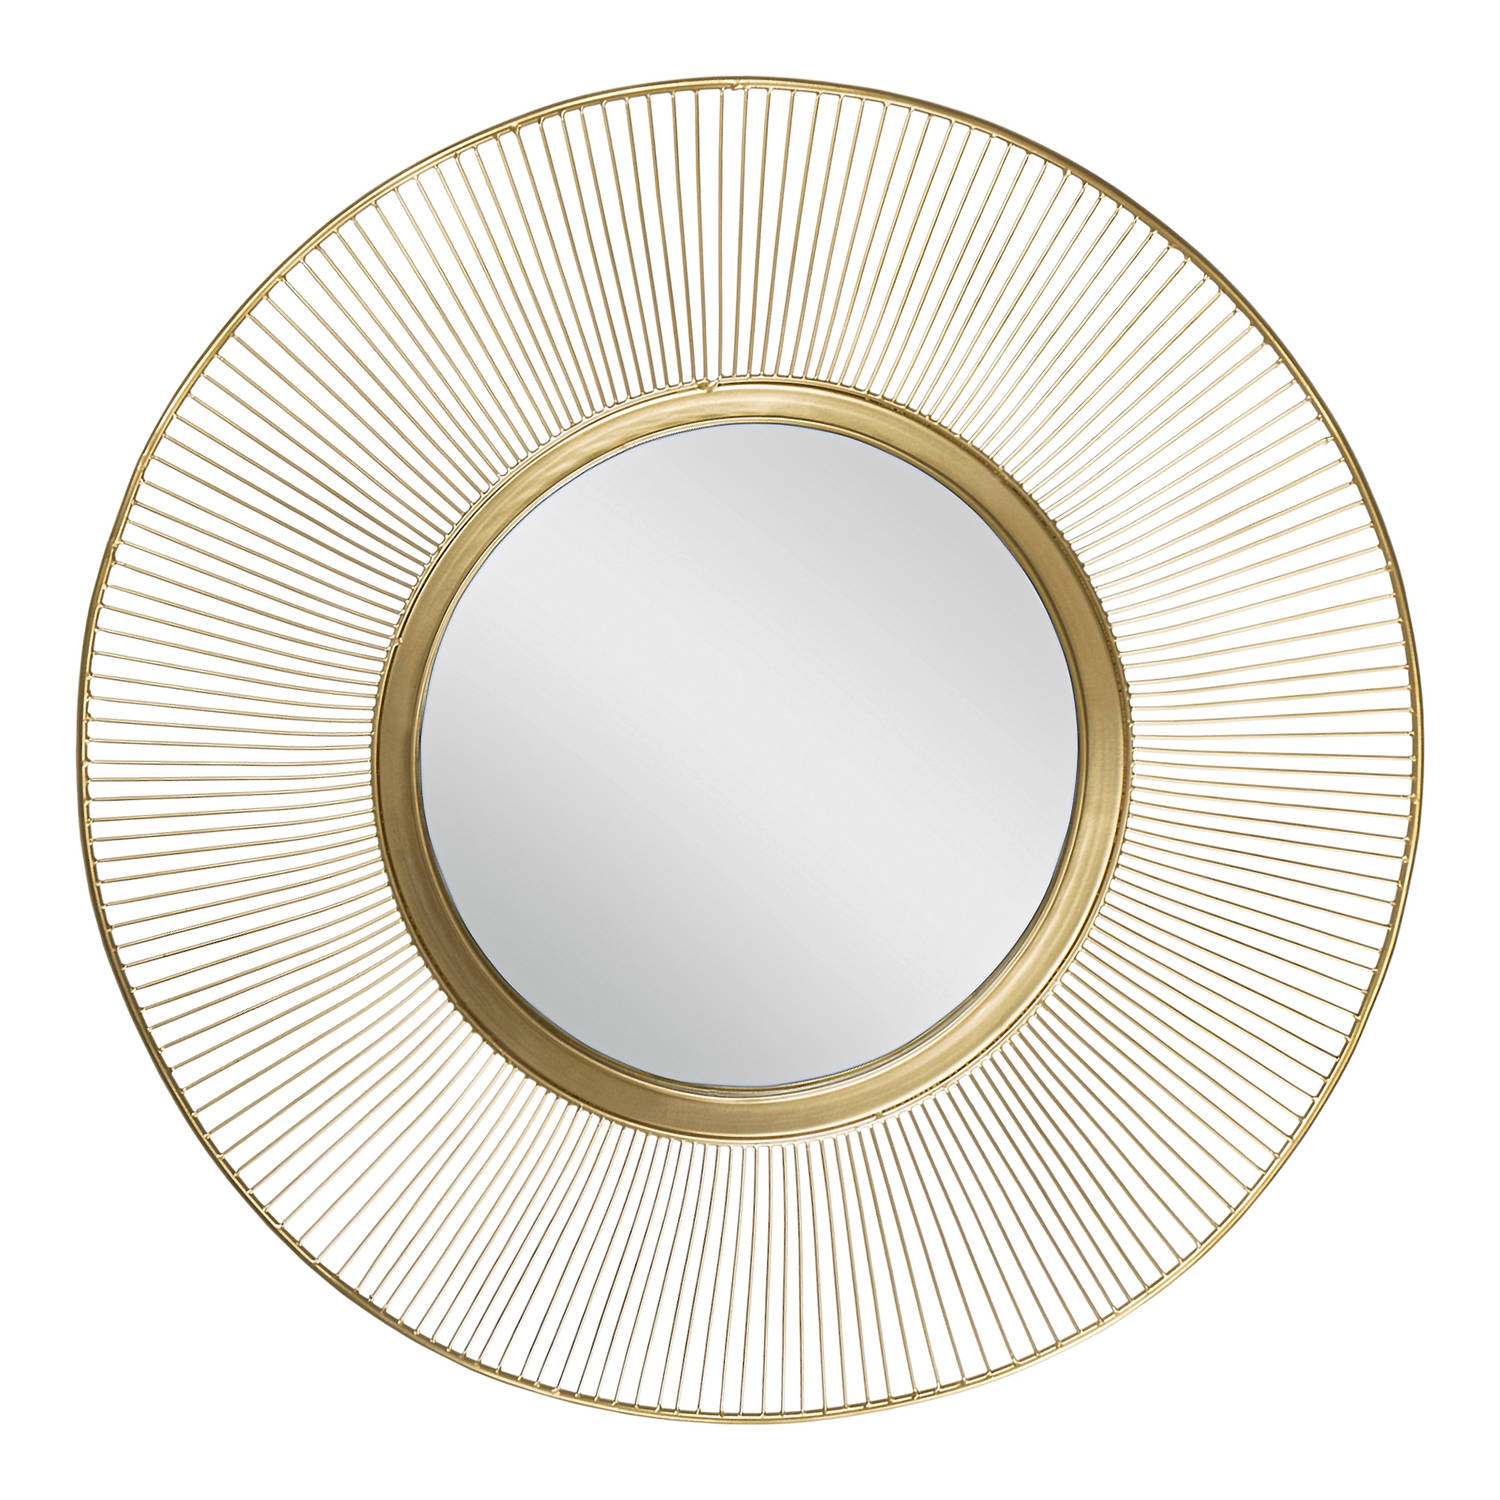 WOMO-DESIGN Decoratieve wandspiegel goud, Ø 82 cm, gemaakt van glas met metalen lijst